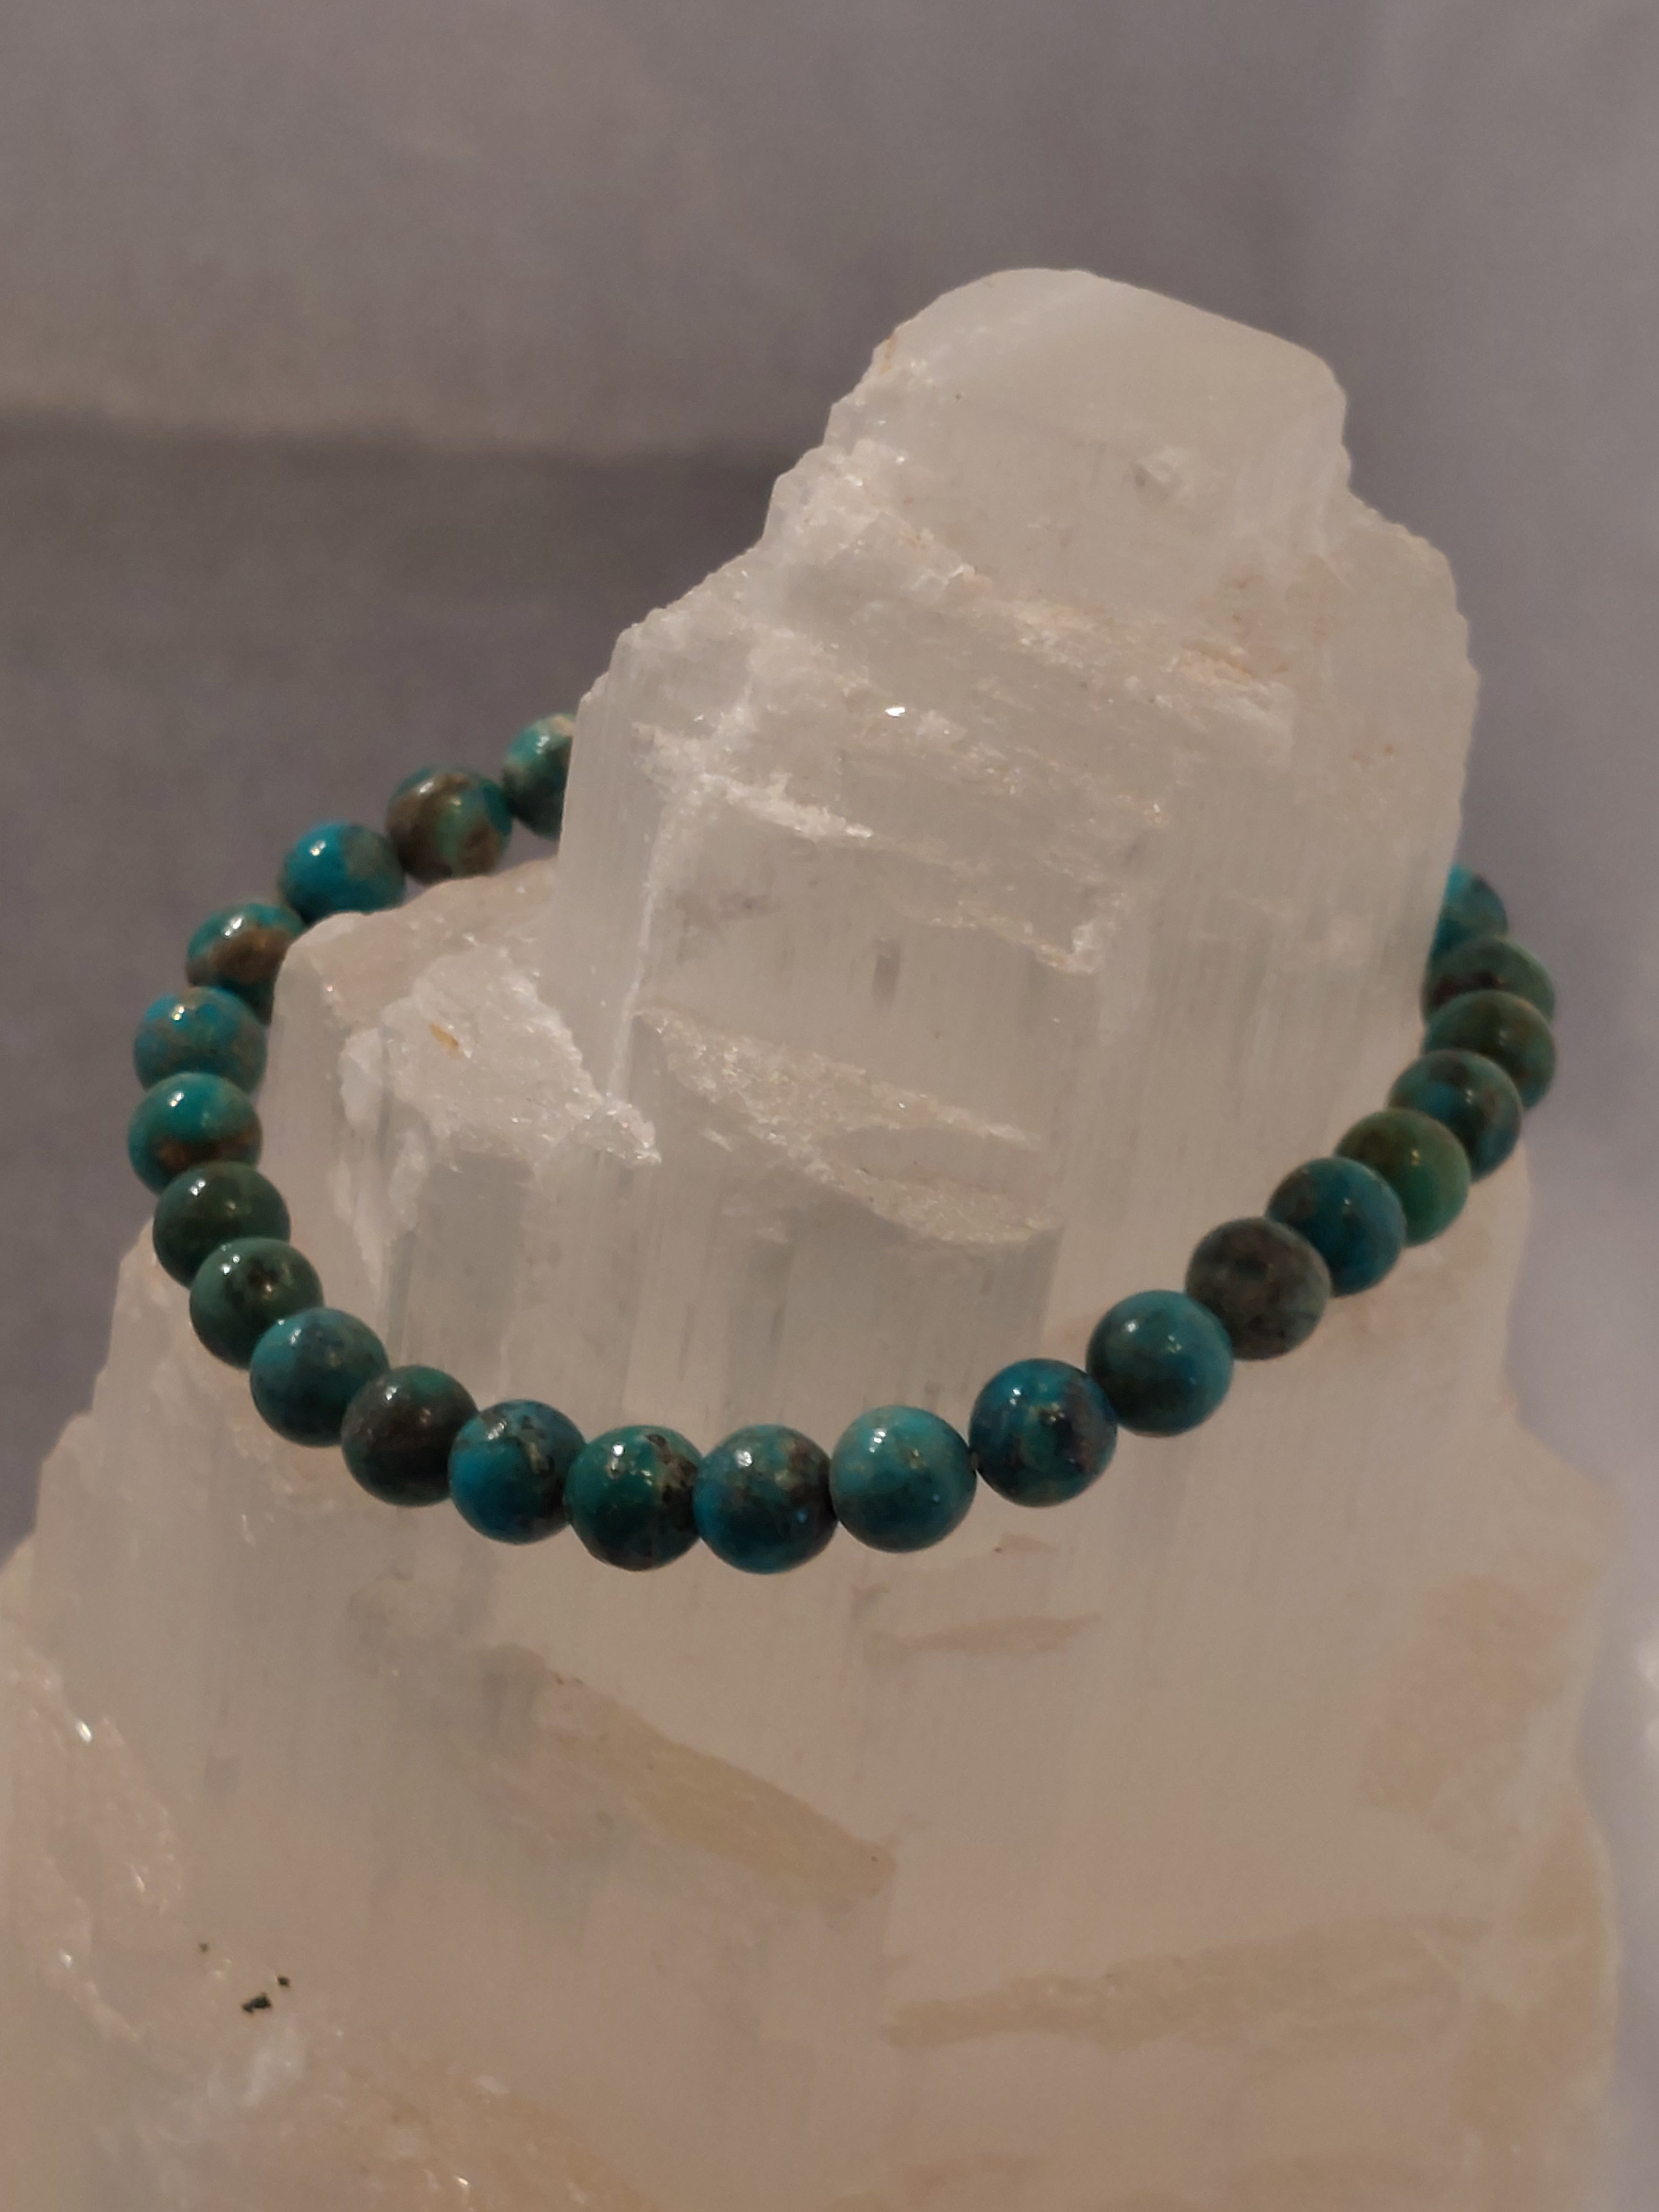 Turquoise Round Bead Bracelet - 6mm Bead